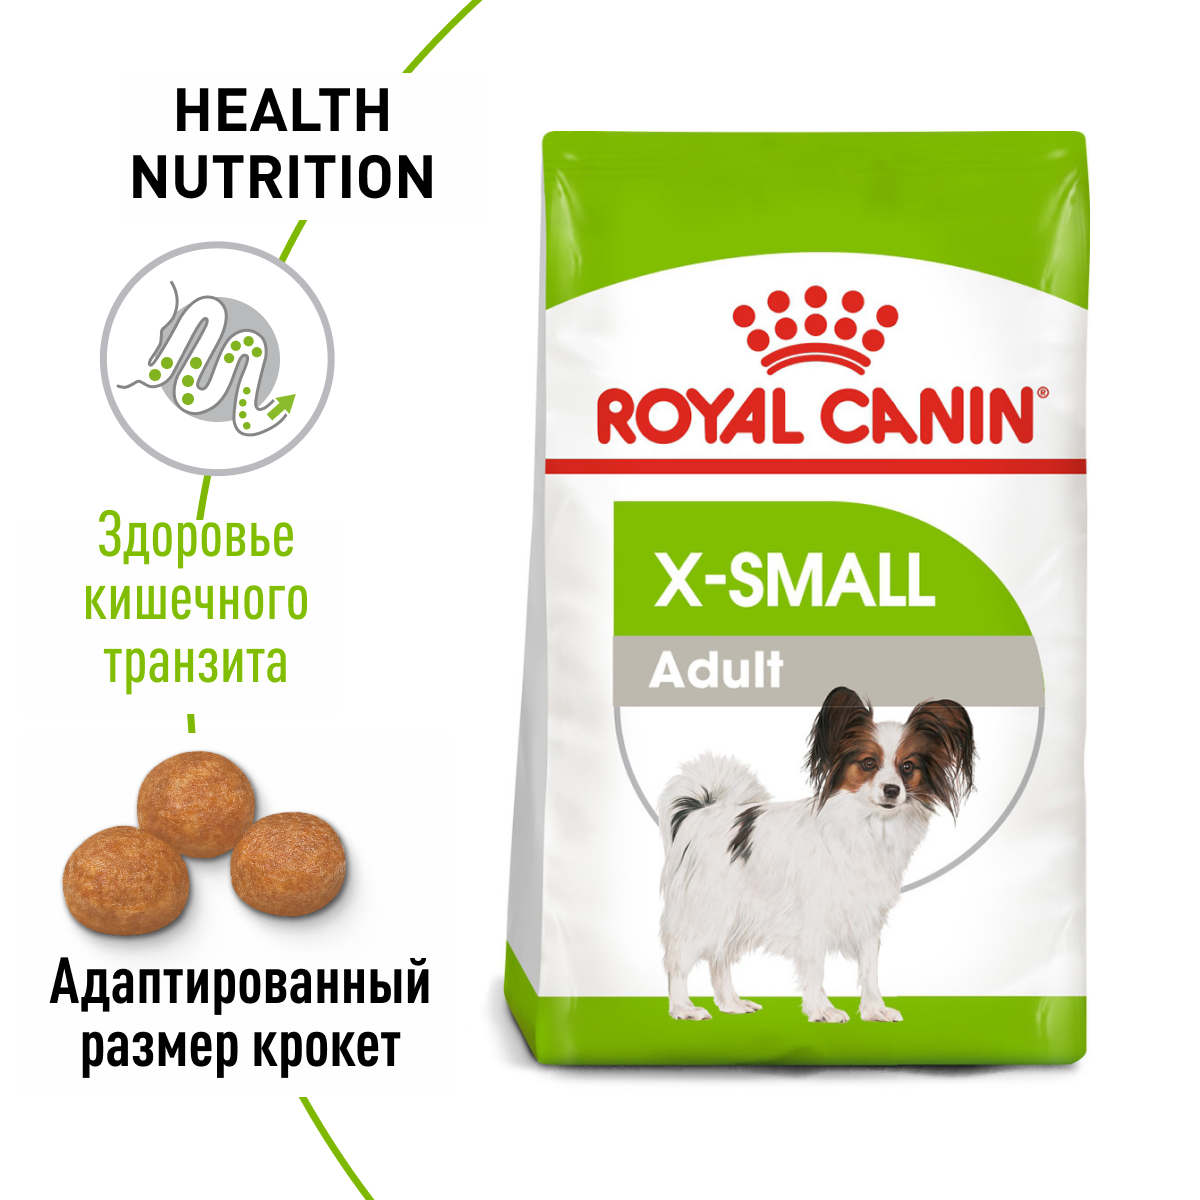 Сухой корм Royal Canin X-Small Adult (Икс Смолл Эдалт) для собак очень мелких размеров от 10 месяцев до 8 лет, 0.5 кг